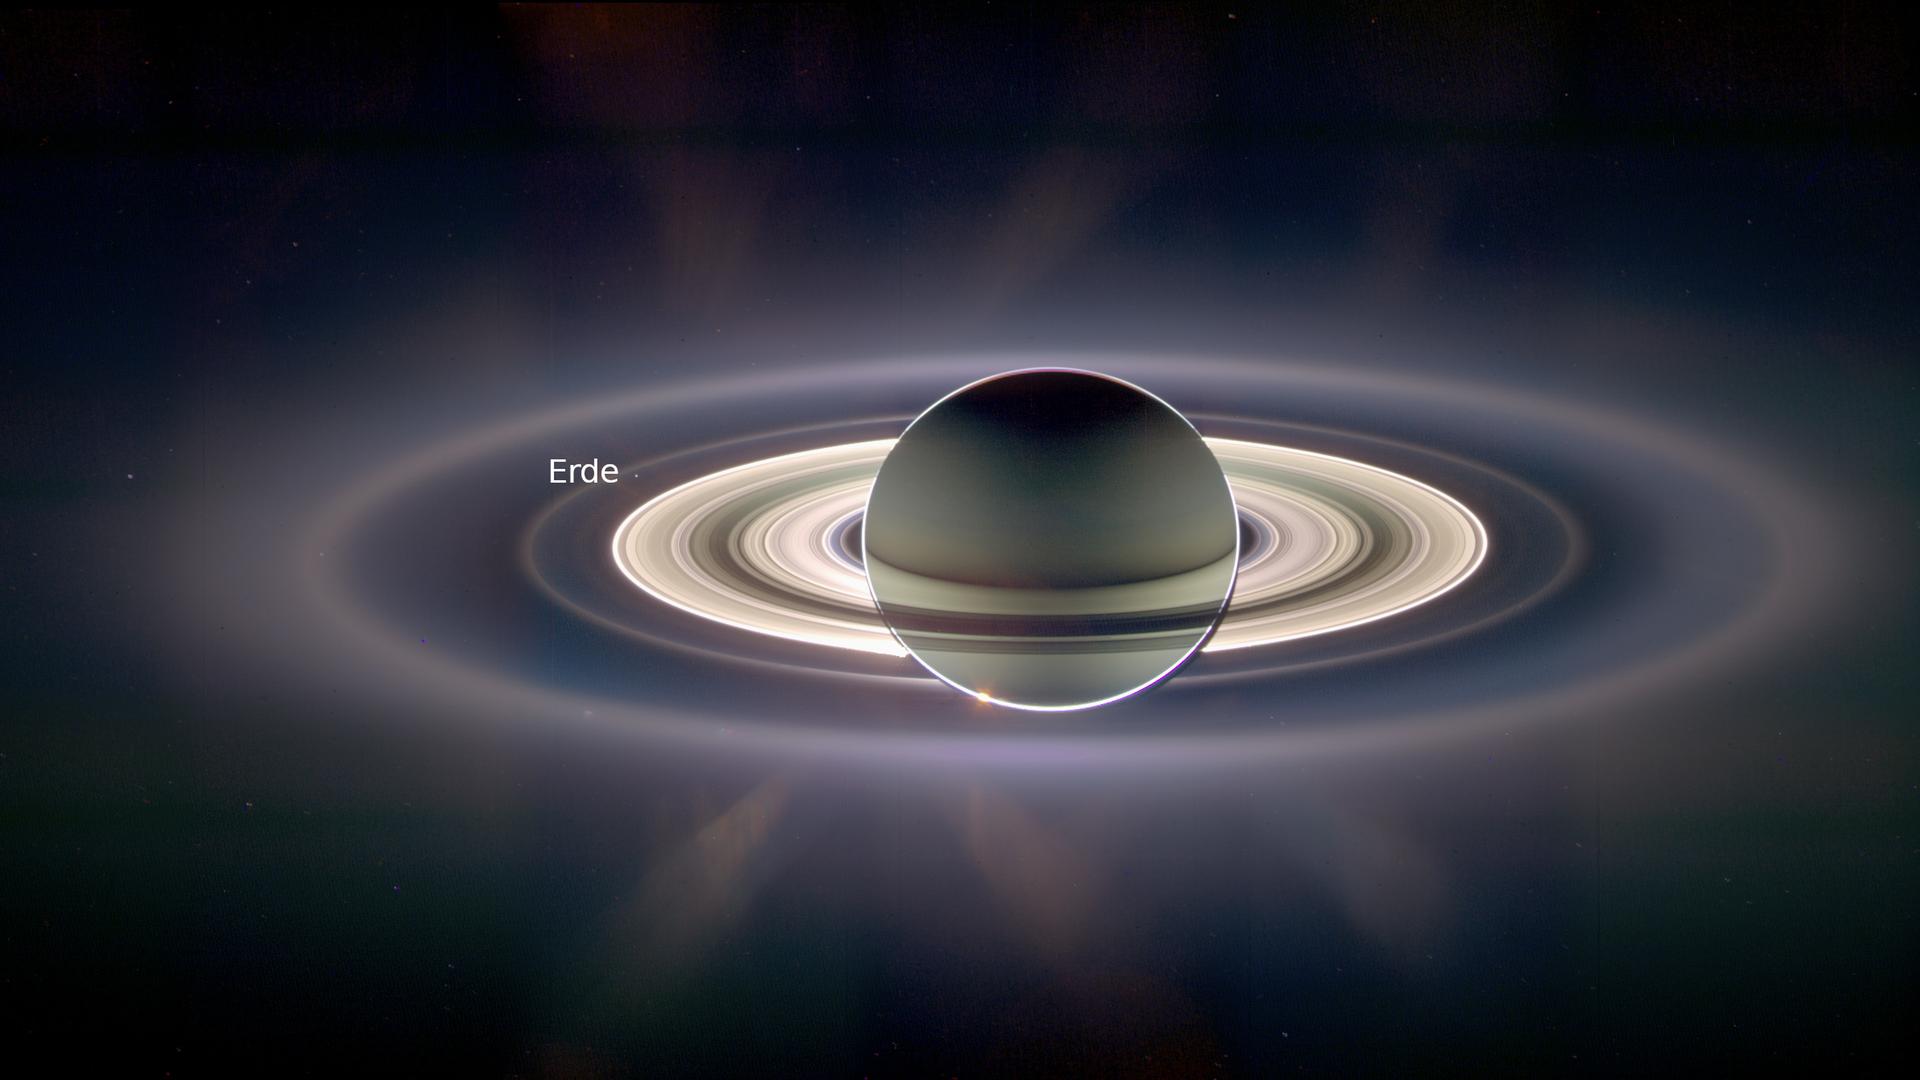 Saturn im Gegenlicht, aufgenommen von der Raumsonde Cassini. Der kleine Punkt am Rand des Ringsystems ist die Erde.